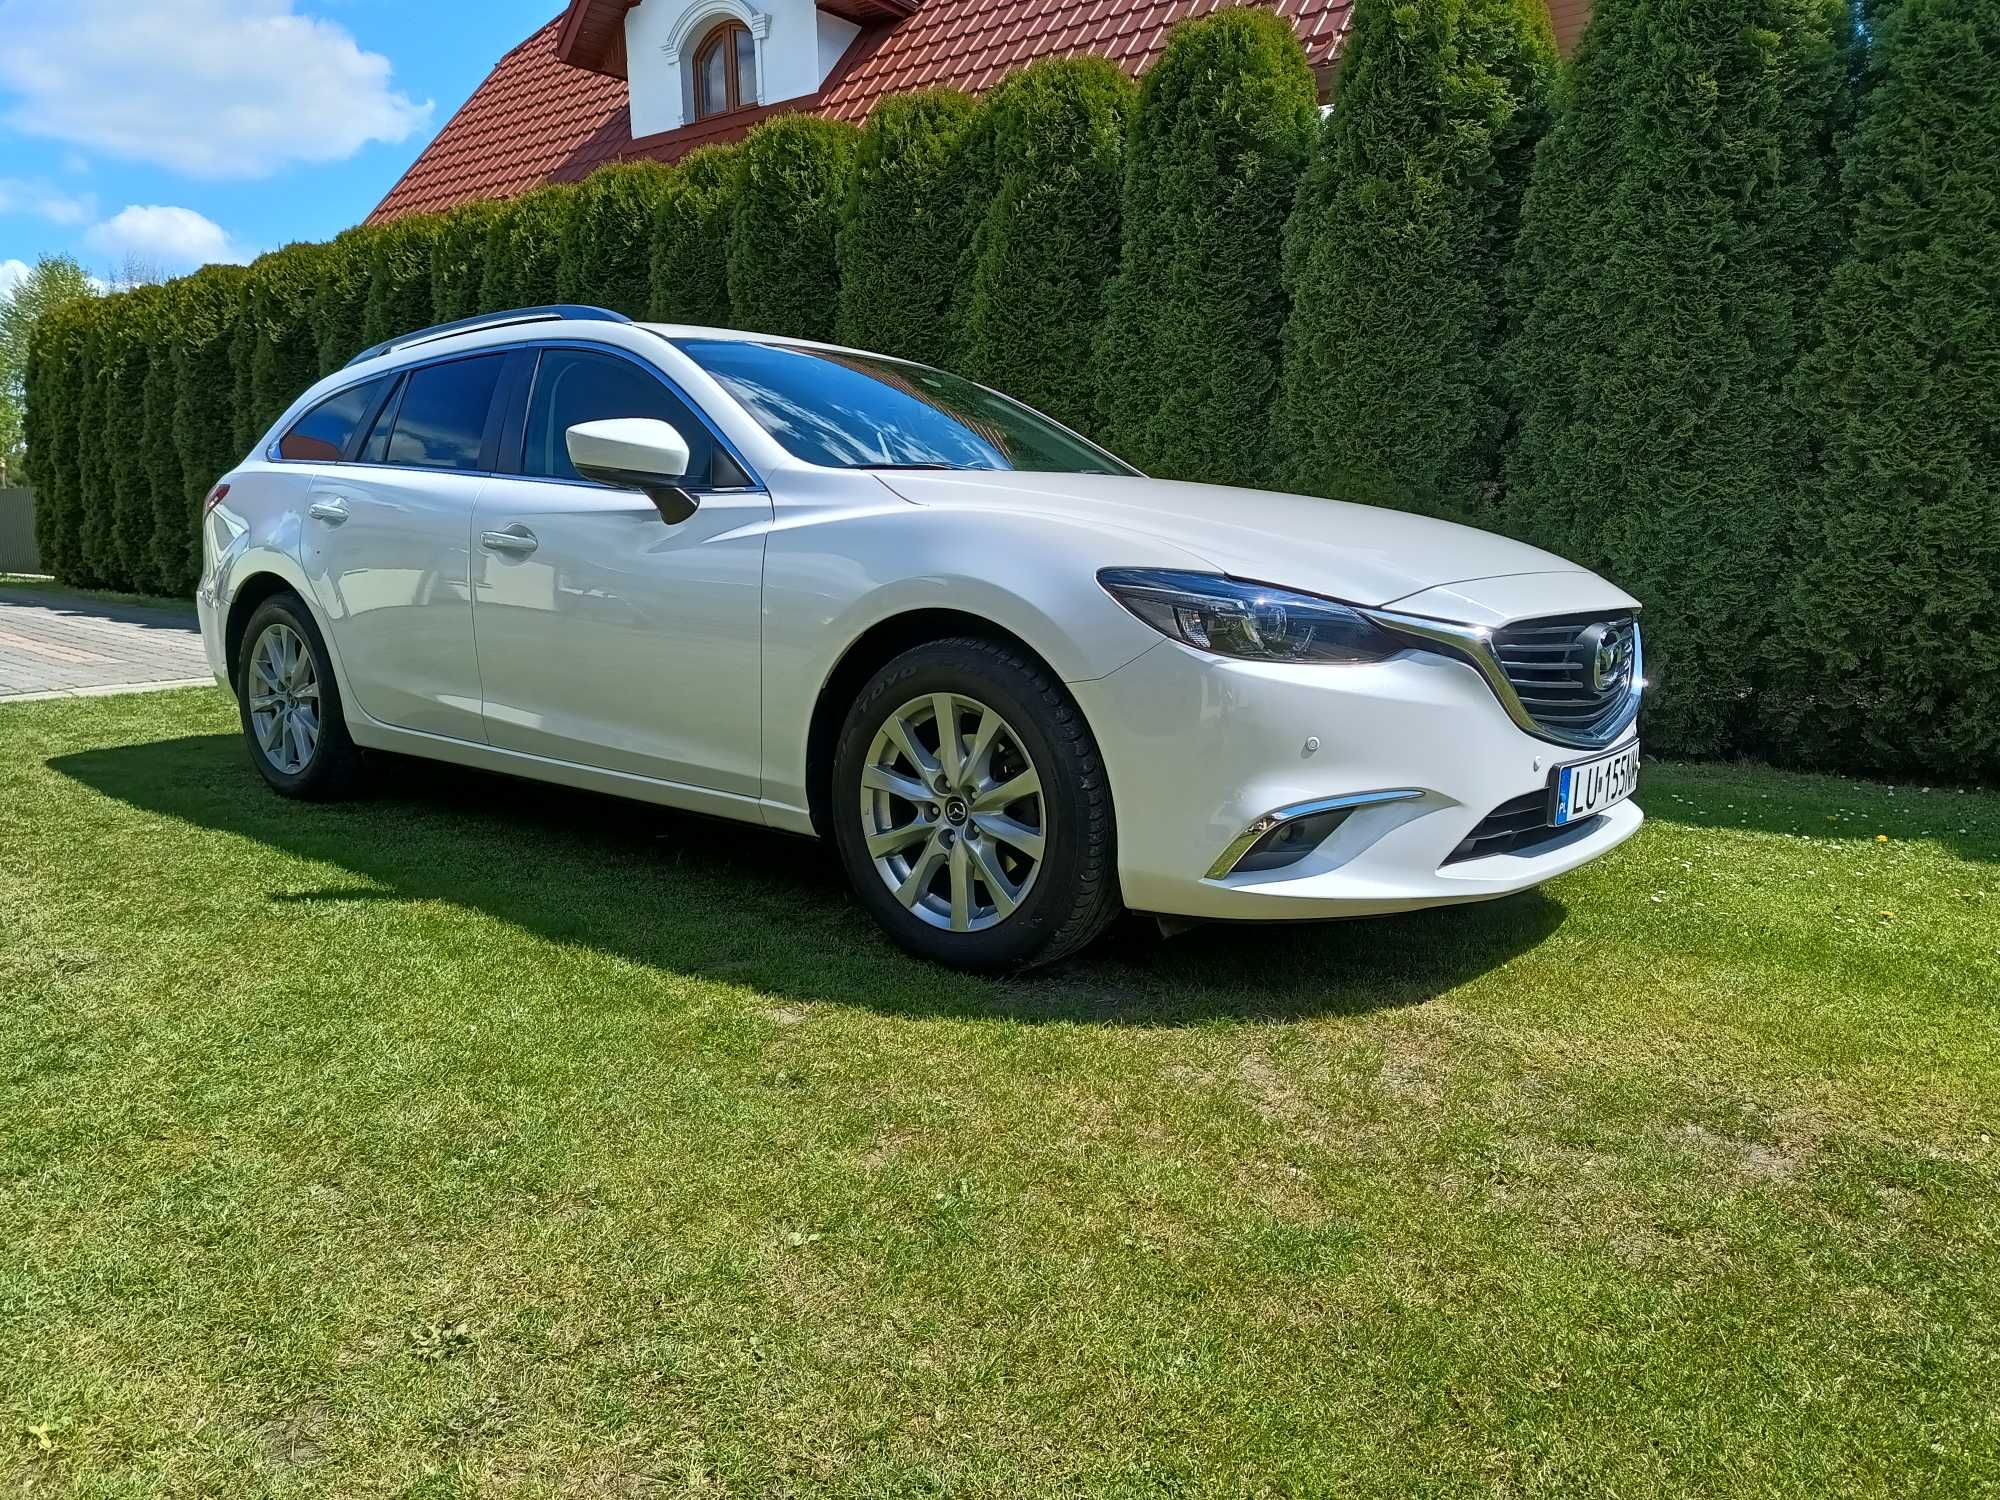 Mazda 6 2017 rok ,  I rej. kwiecień 2018 , salon Polska